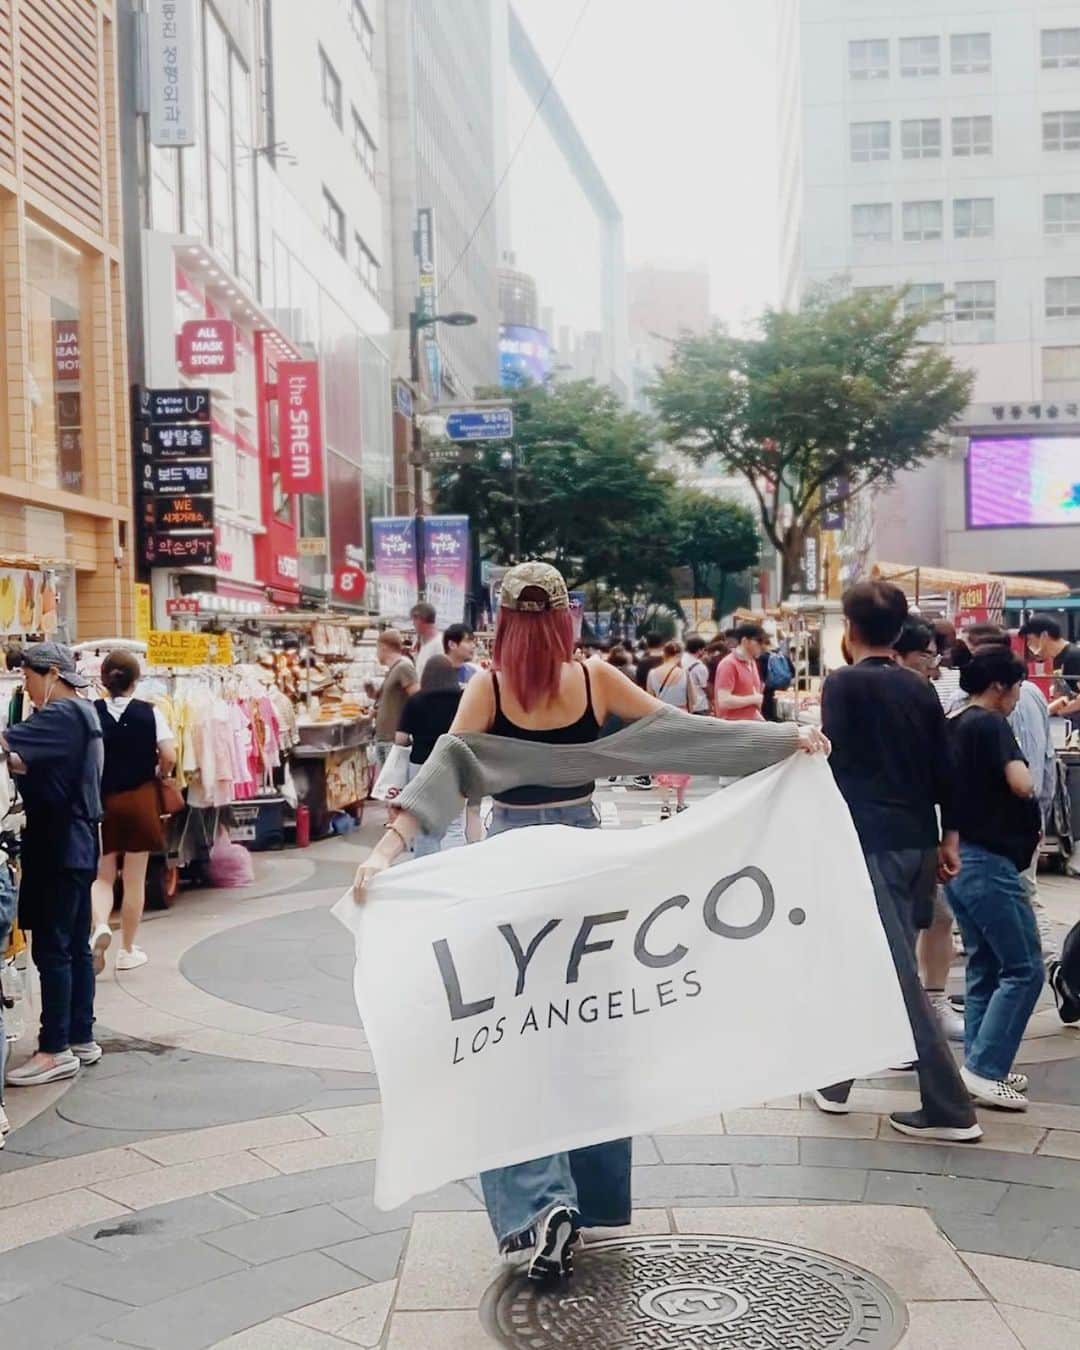 CLEAのインスタグラム：「LYFCO.韓国ツアーに 参加してくださった6名の方から ツアーの感想をいただきました📝✨  🗣️No,1 HARUKAさん {渡韓歴:初めて バイヤーという仕事は本当に体力勝負な所があるなと 今回行ってみて感じました。 本当に凄い数の服やアクセサリーの中から 自分のショップで販売したい物を探す、難しいけど楽しいし、 これからショップをやりたい気持ちも高まりました。 どんな商品を売ろうかなと考えながら見て回る時間は とても勉強になりました。 また、ビューティーの方では、 ヘアメイクアップアーティストの方が説明しながら モデルさんへメイクをしてくれて、とても勉強になりました。 自分の今のメイクにアドバイスをしてくれたり、 今使っているコスメをこうやって使うと良いよと教えてくれたり、 オリーブヤングで購入できるおすすめコスメなど、 知れて本当に嬉しかったです！ また、一緒にコスメショップに行って買い物できるというのは なかなかできない経験だと思うので最高でした！ もっともっと聞いていたかったです！笑  🗣️No,2 MIKAさん {渡韓歴:6回以上 とても楽しかったです！ LYFCO.の方や一緒に参加したみなさんも フレンドリーに接してくださいましたし、 ファッションやコスメなどのこと、 韓国での仕入れの仕方や場所を実際に一緒に回ってくださったり、 自分に合うコスメやトレンドなどなどたくさんのことを 教えていただけてとても良い経験になりました！ ありがとうございました！！！  🗣️No,3 AYUさん みなさん本当に良い人ばかりで、 たくさんお話できたし楽しかったです！ 3日間で貴重な体験ができて参加して良かったと思いました！ ありがとうございました！  🗣️No,4 RINOさん {渡韓歴:初めて 綾乃さん智子さん3日間ありがとうございました！！ ZOOM説明会でお会いしたときから実際に韓国でお会いし、 ツアー中ずっと丁寧に優しく対応してくださり ありがとうございました。 ずっと知りたかったこと・好きなことを 素敵な方たちに教えていただけることに幸せを感じていました。 学びながらも精一杯楽しめるように計画を立て、 手配してくださり本当にありがとうございました！！  🗣️No,5 AMIさん 今回は貴重な経験をさせていただきありがとうございました！ あやのさん、ともさん、参加された方皆さん 優しくて面白くて本当に楽しい3日間でした！ このプログラムに参加して、 語学やファッションやメイクへの興味がより深まったので 学んだことを活かして 就活や学生生活頑張っていきたいと思います！ ほんとうにありがとうございます！大好きです(；；)  🗣️No,6 AIKAさん {渡韓歴:3~5回 なかなか日本では見れないファッション文化の光景が たくさんあってすごく楽しかったです。 海外だからこそできる値下げ交渉も、 言語が違う中コミニュケーションをとり難しい部分はあったけど いい経験になったし、それも楽しかったです。 メイクの分野でも実際に見て勉強することができたし、 実際に日本に入っている流行りや情報とは異なっている部分も 多いんだなと知ることができてよかったです。 どちらもすごく楽しかったし、勉強になり良い経験になりました。  みなさん素敵な感想をありがとうございました！💛 これからもさらに良いツアーを開催できるよう アップデートを重ねて行きたいと思います🔥!!  また、ツアーを開催する予定ですので 気になる方は是非LYFCO.のInstagramを チェックしていただけると嬉しいです☻  #LYFCO #韓国ツアー」